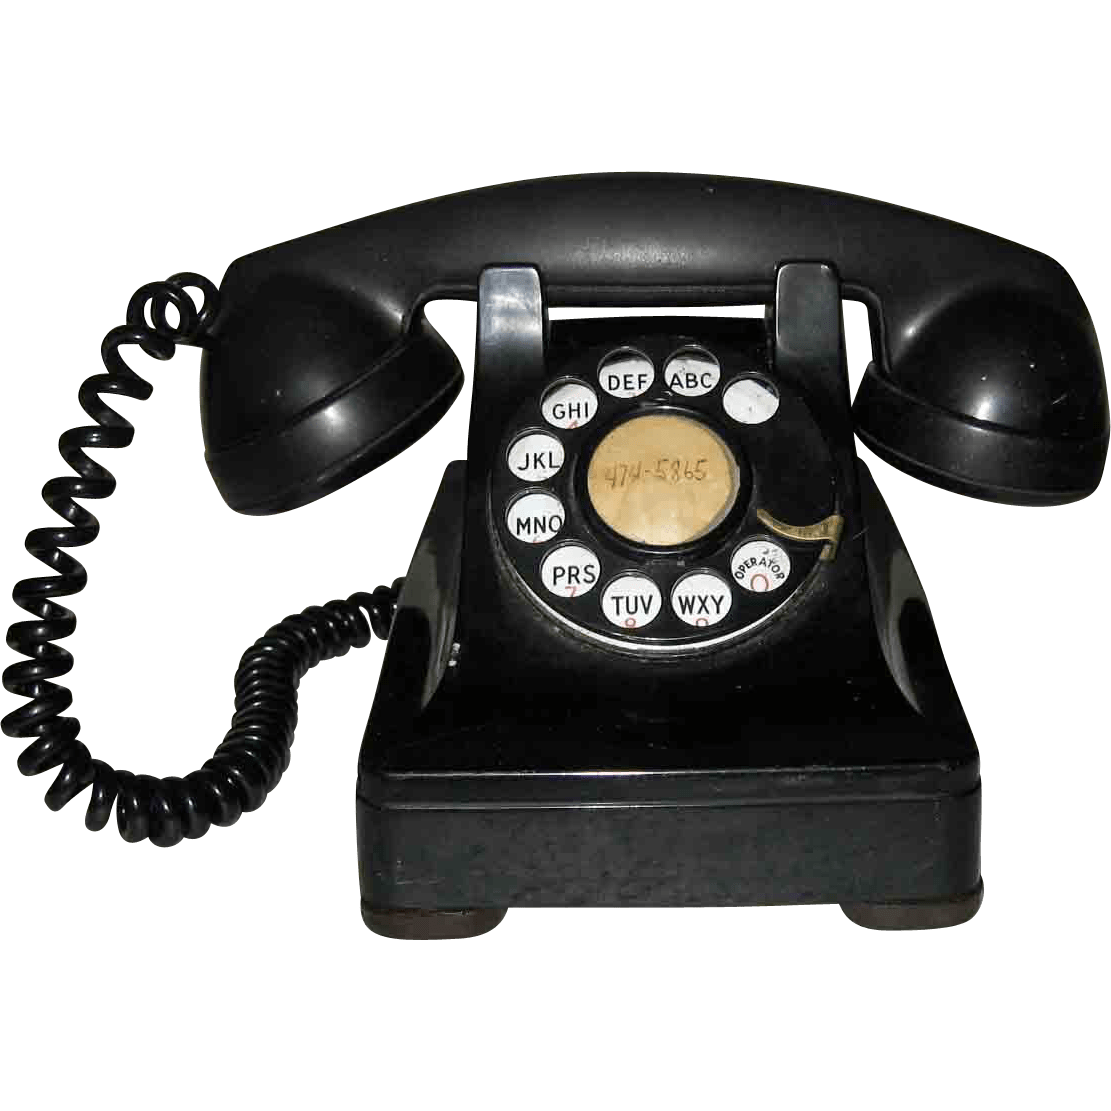 Картинки телефонных аппаратов. Телефонный аппарат сапфир-2. Старинный телефонный аппарат. Старый телефон. Старый проводной телефон.